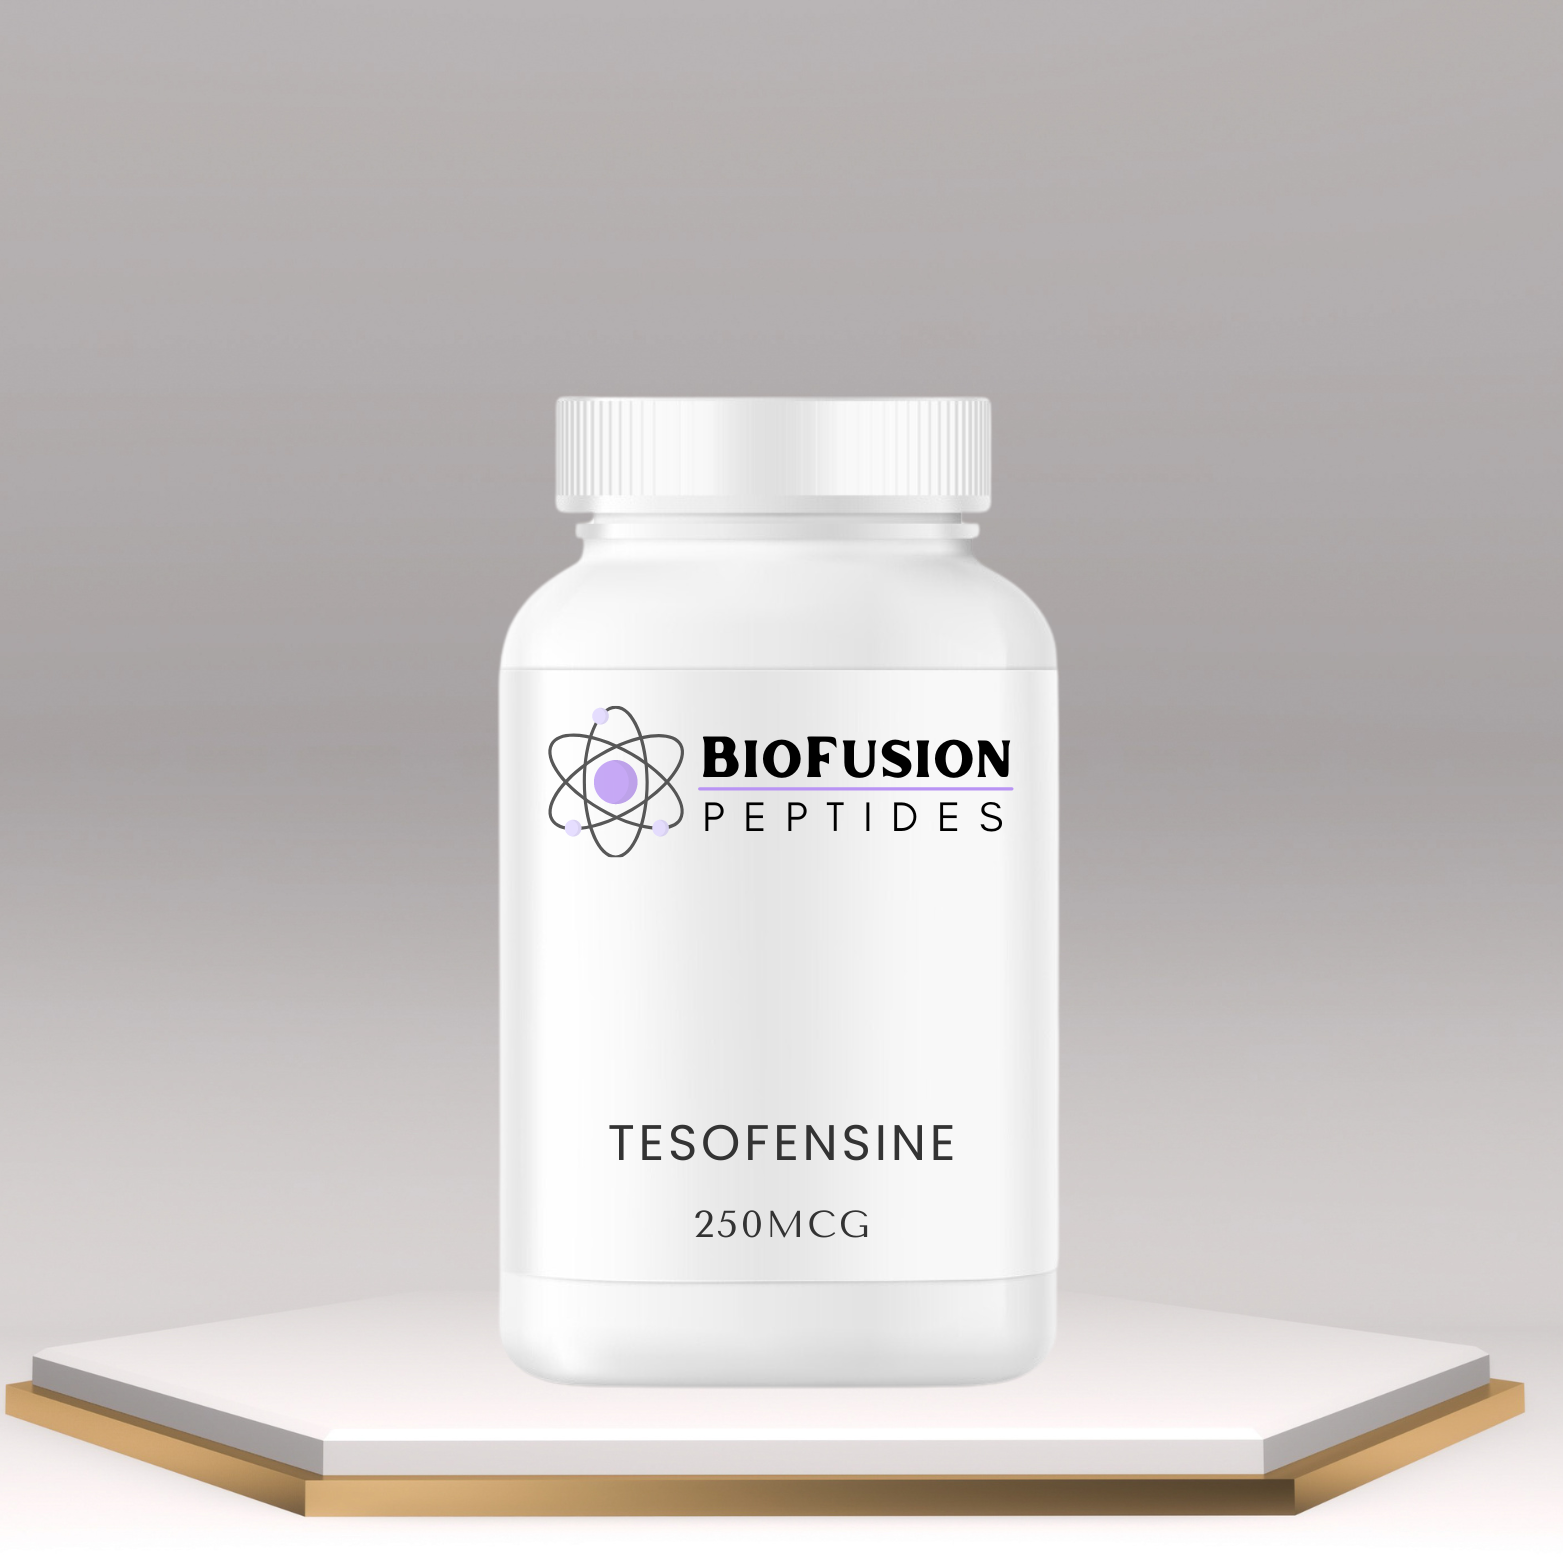 BioFusion Peptides Tesofensine bottle 250mcg